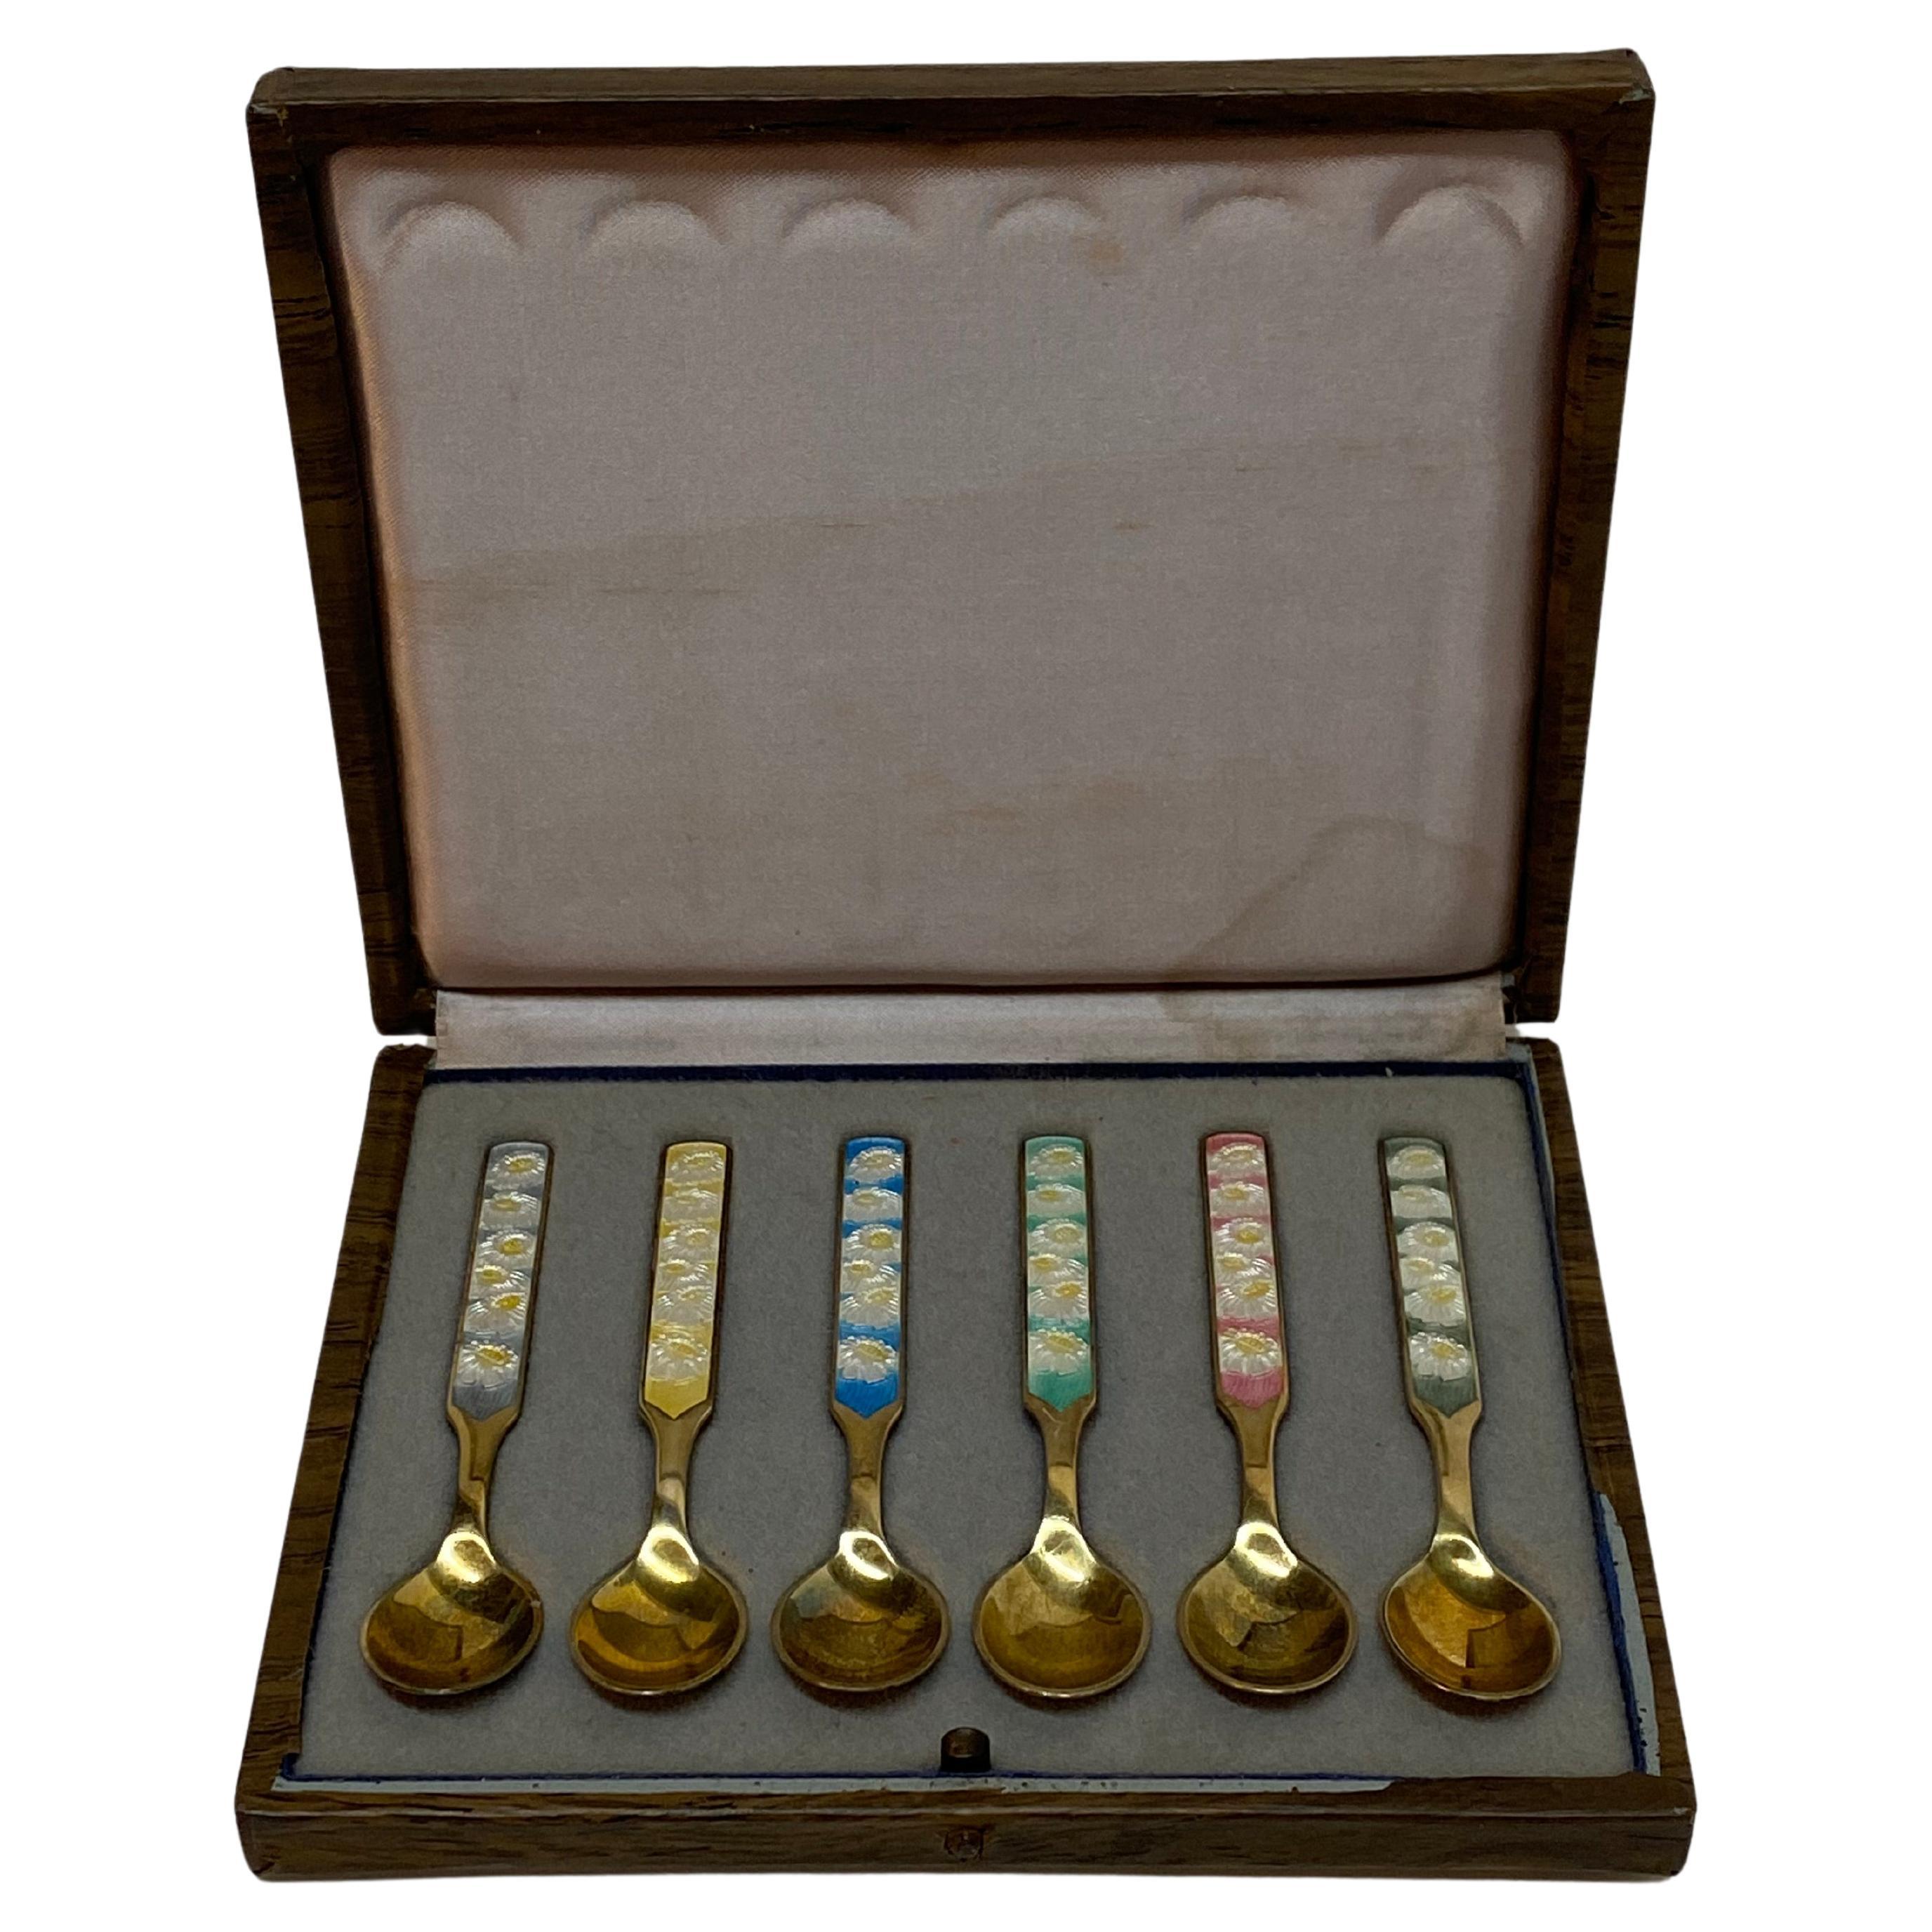 Anton Michelsen Danish Enameled Sterling Silver Demitasse Spoons, Set of Six (cuillères à soupe en argent émaillé danoises)